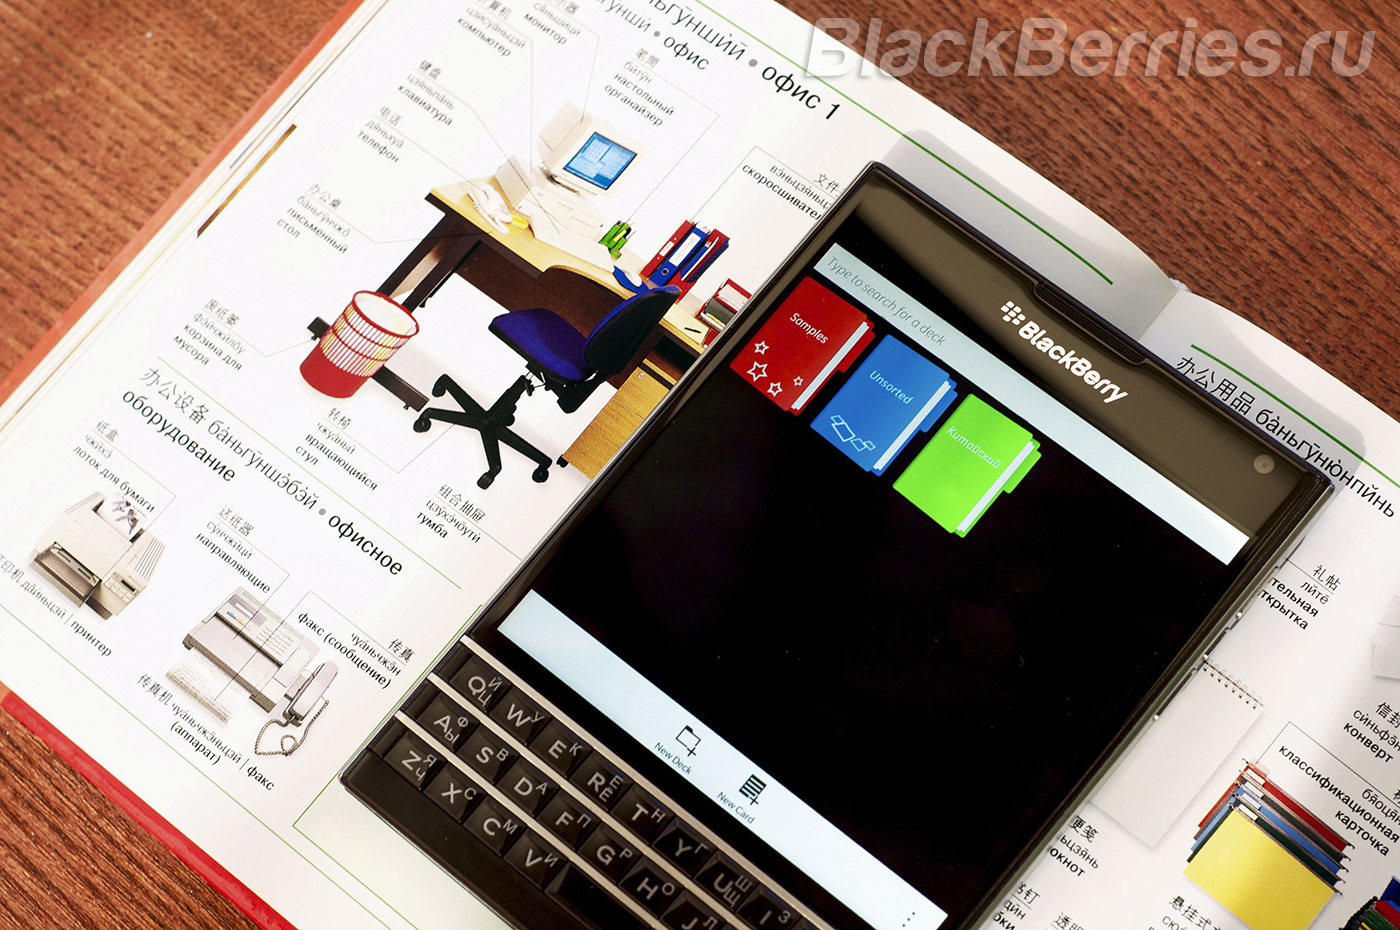 BlackBerry-Passport-Apps-08